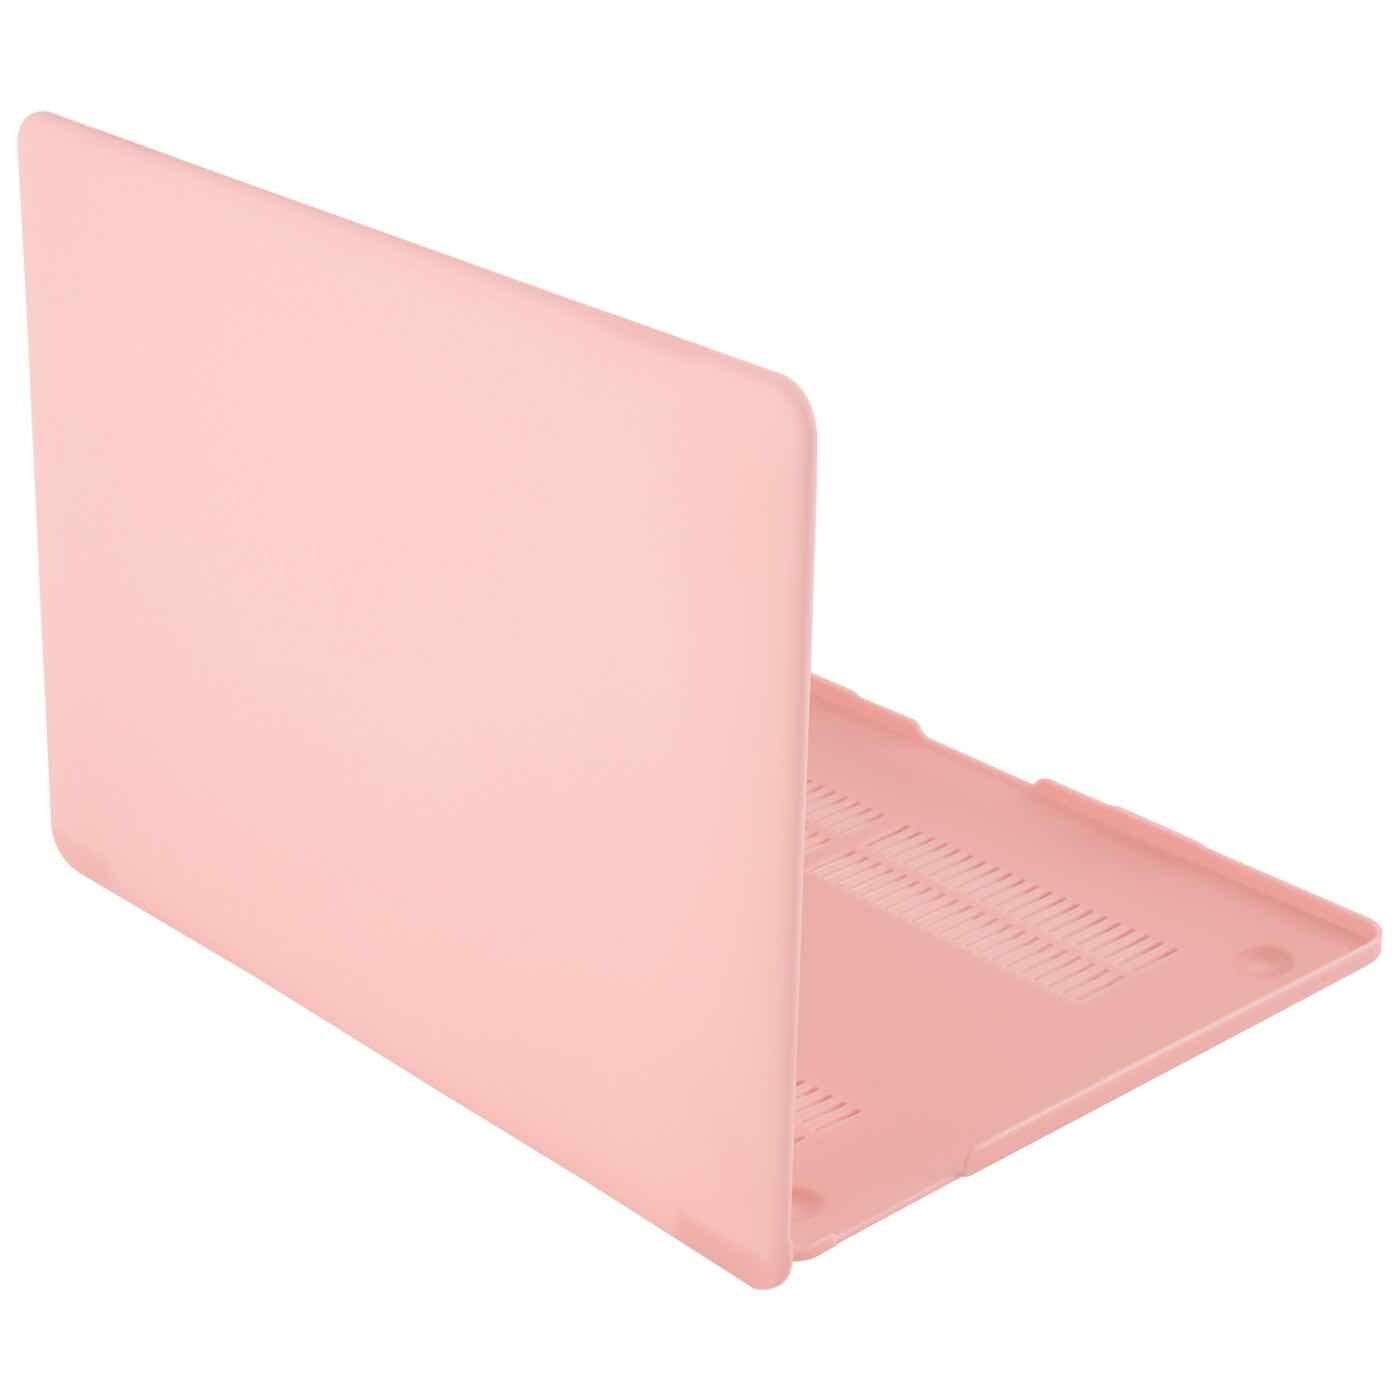 Накладка Barn & Hollis Matte Case для Macbook Pro 13 розовая (2016 - 2020 г.в.)